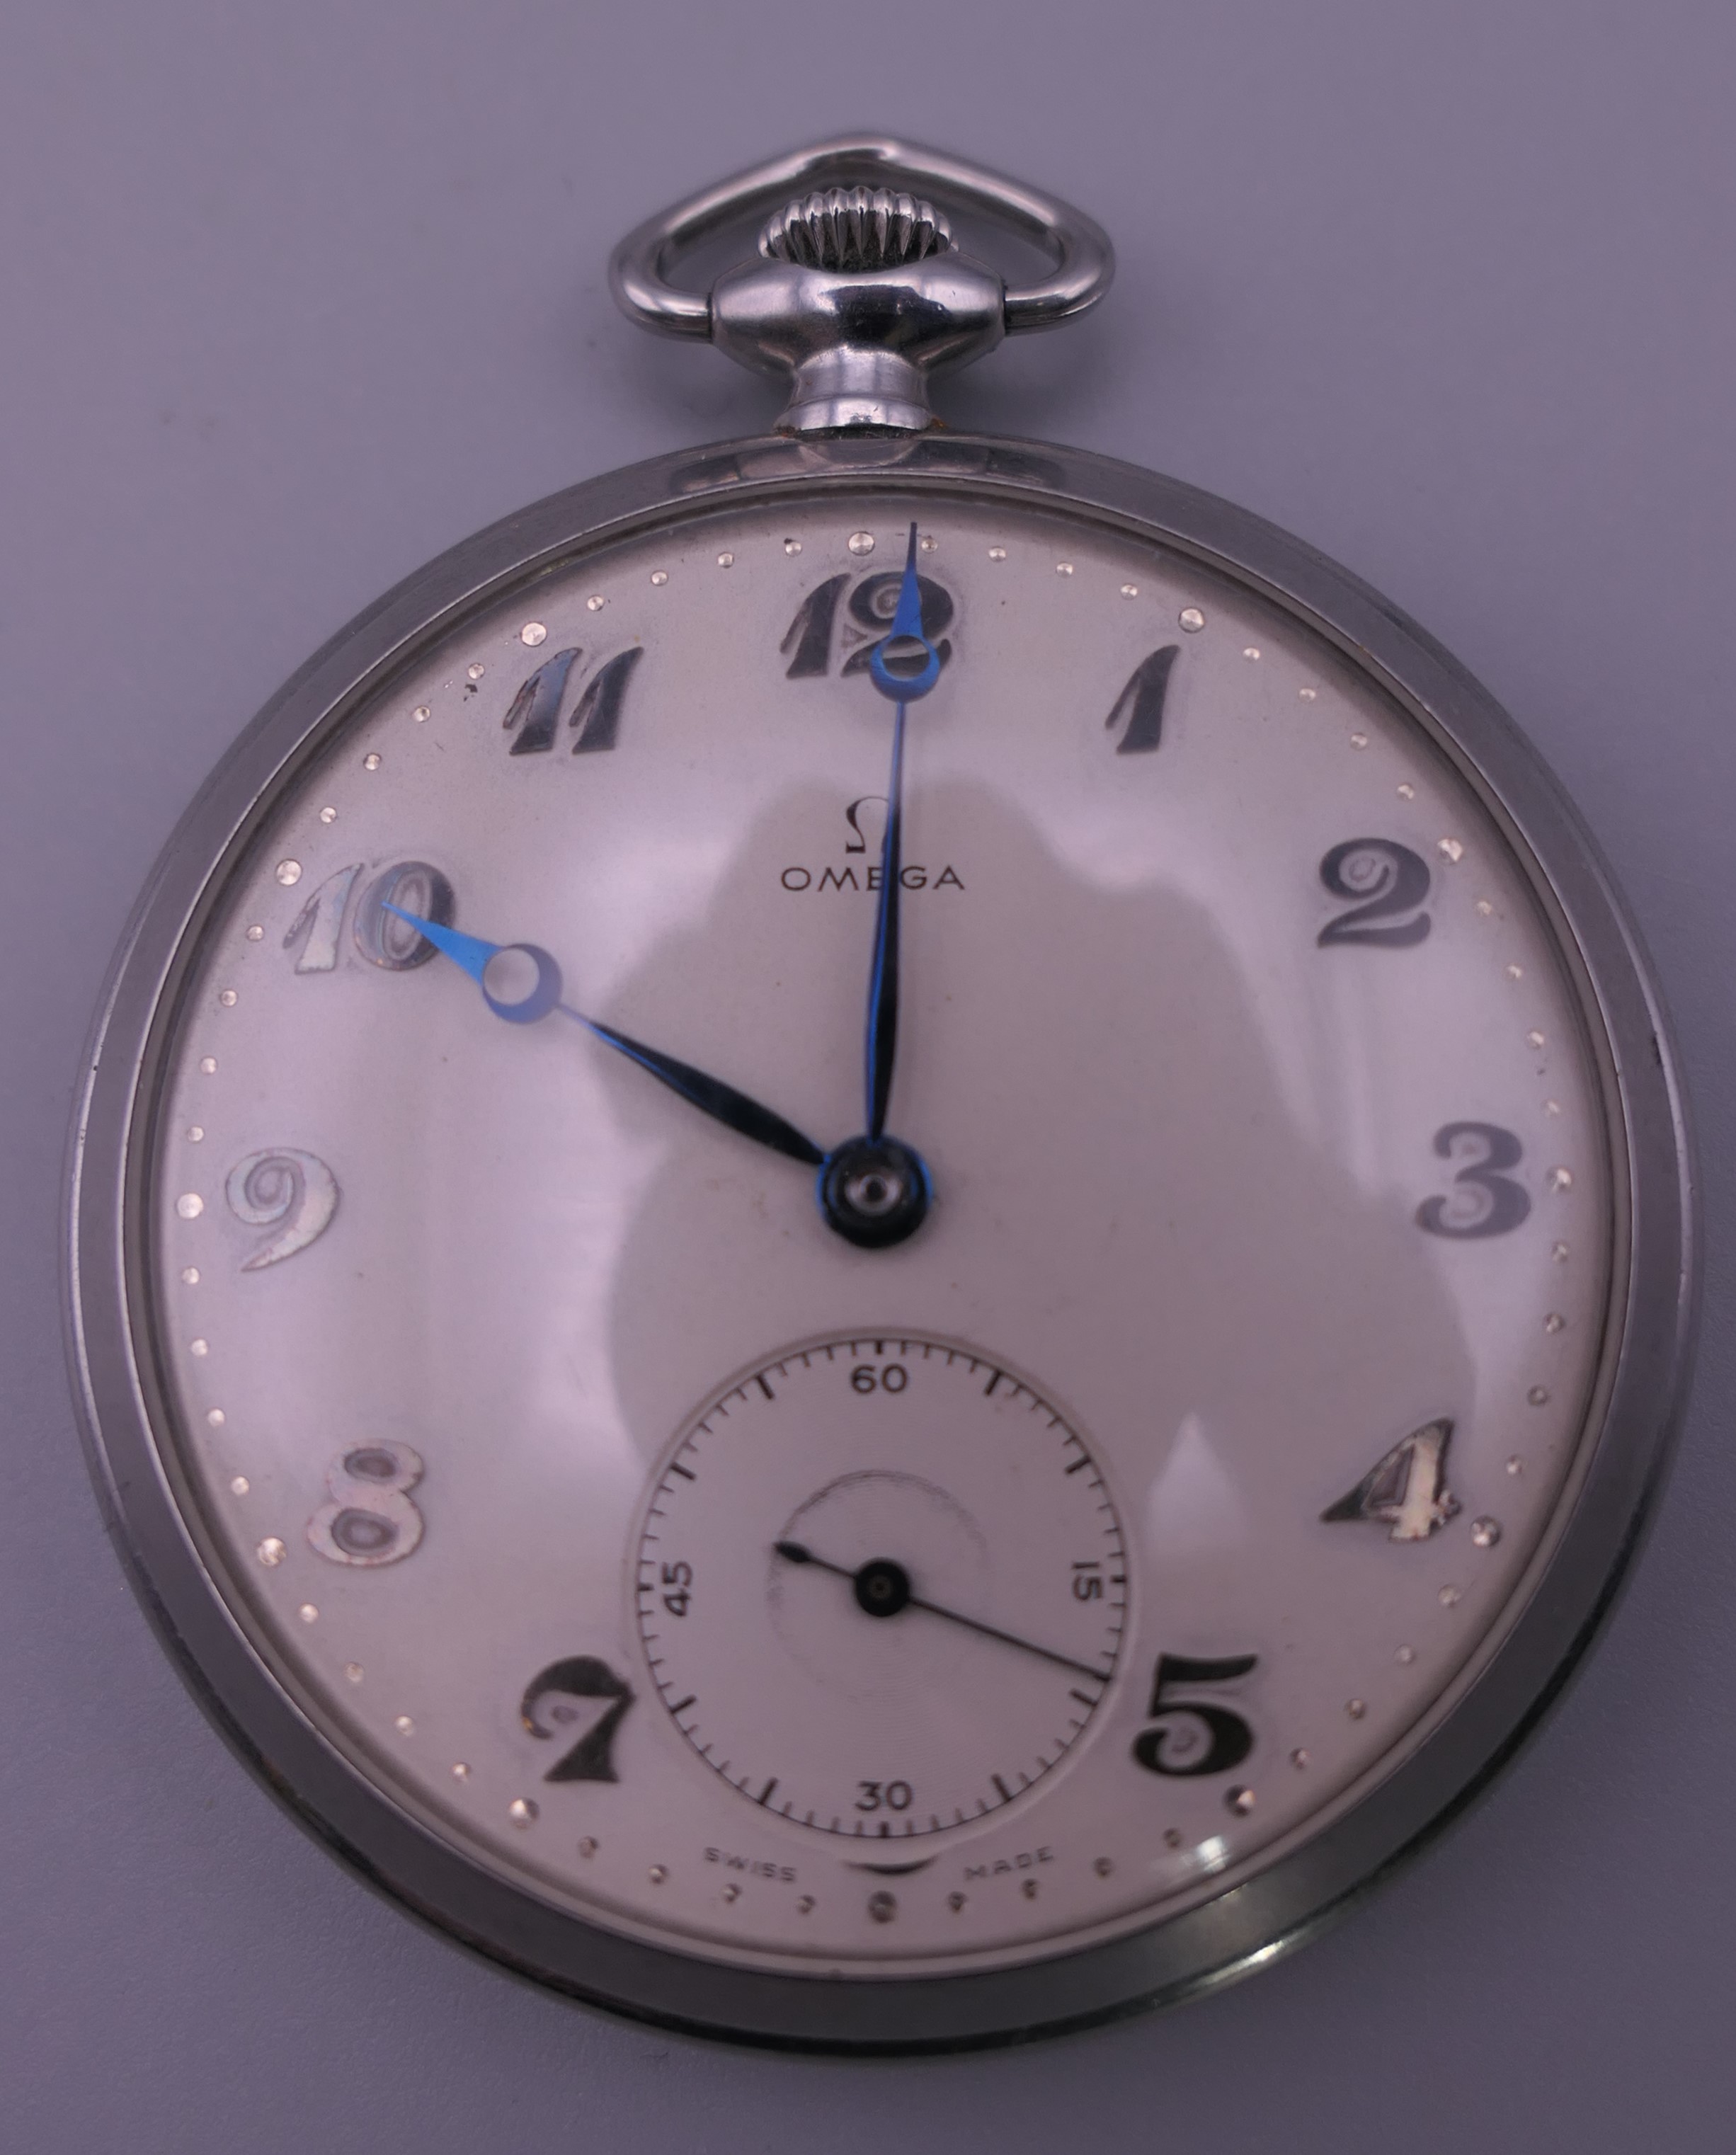 An Omega gentleman's pocket watch. 5 cm diameter.